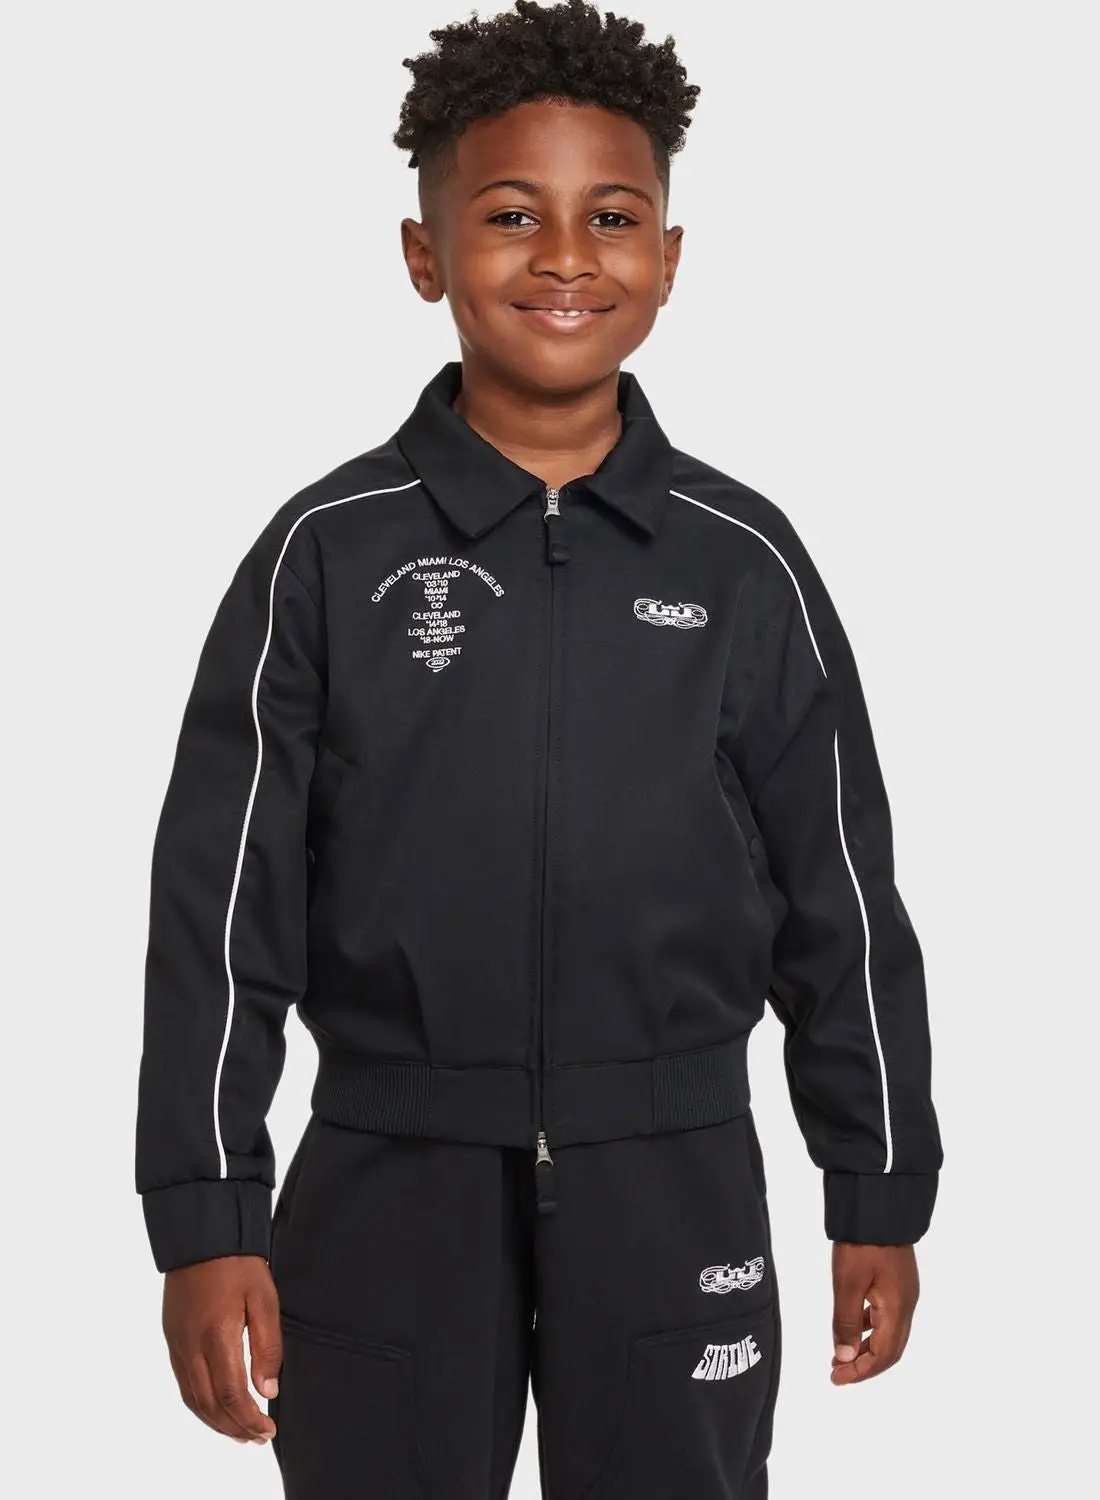 Nike Youth Lebron James Track Jacket